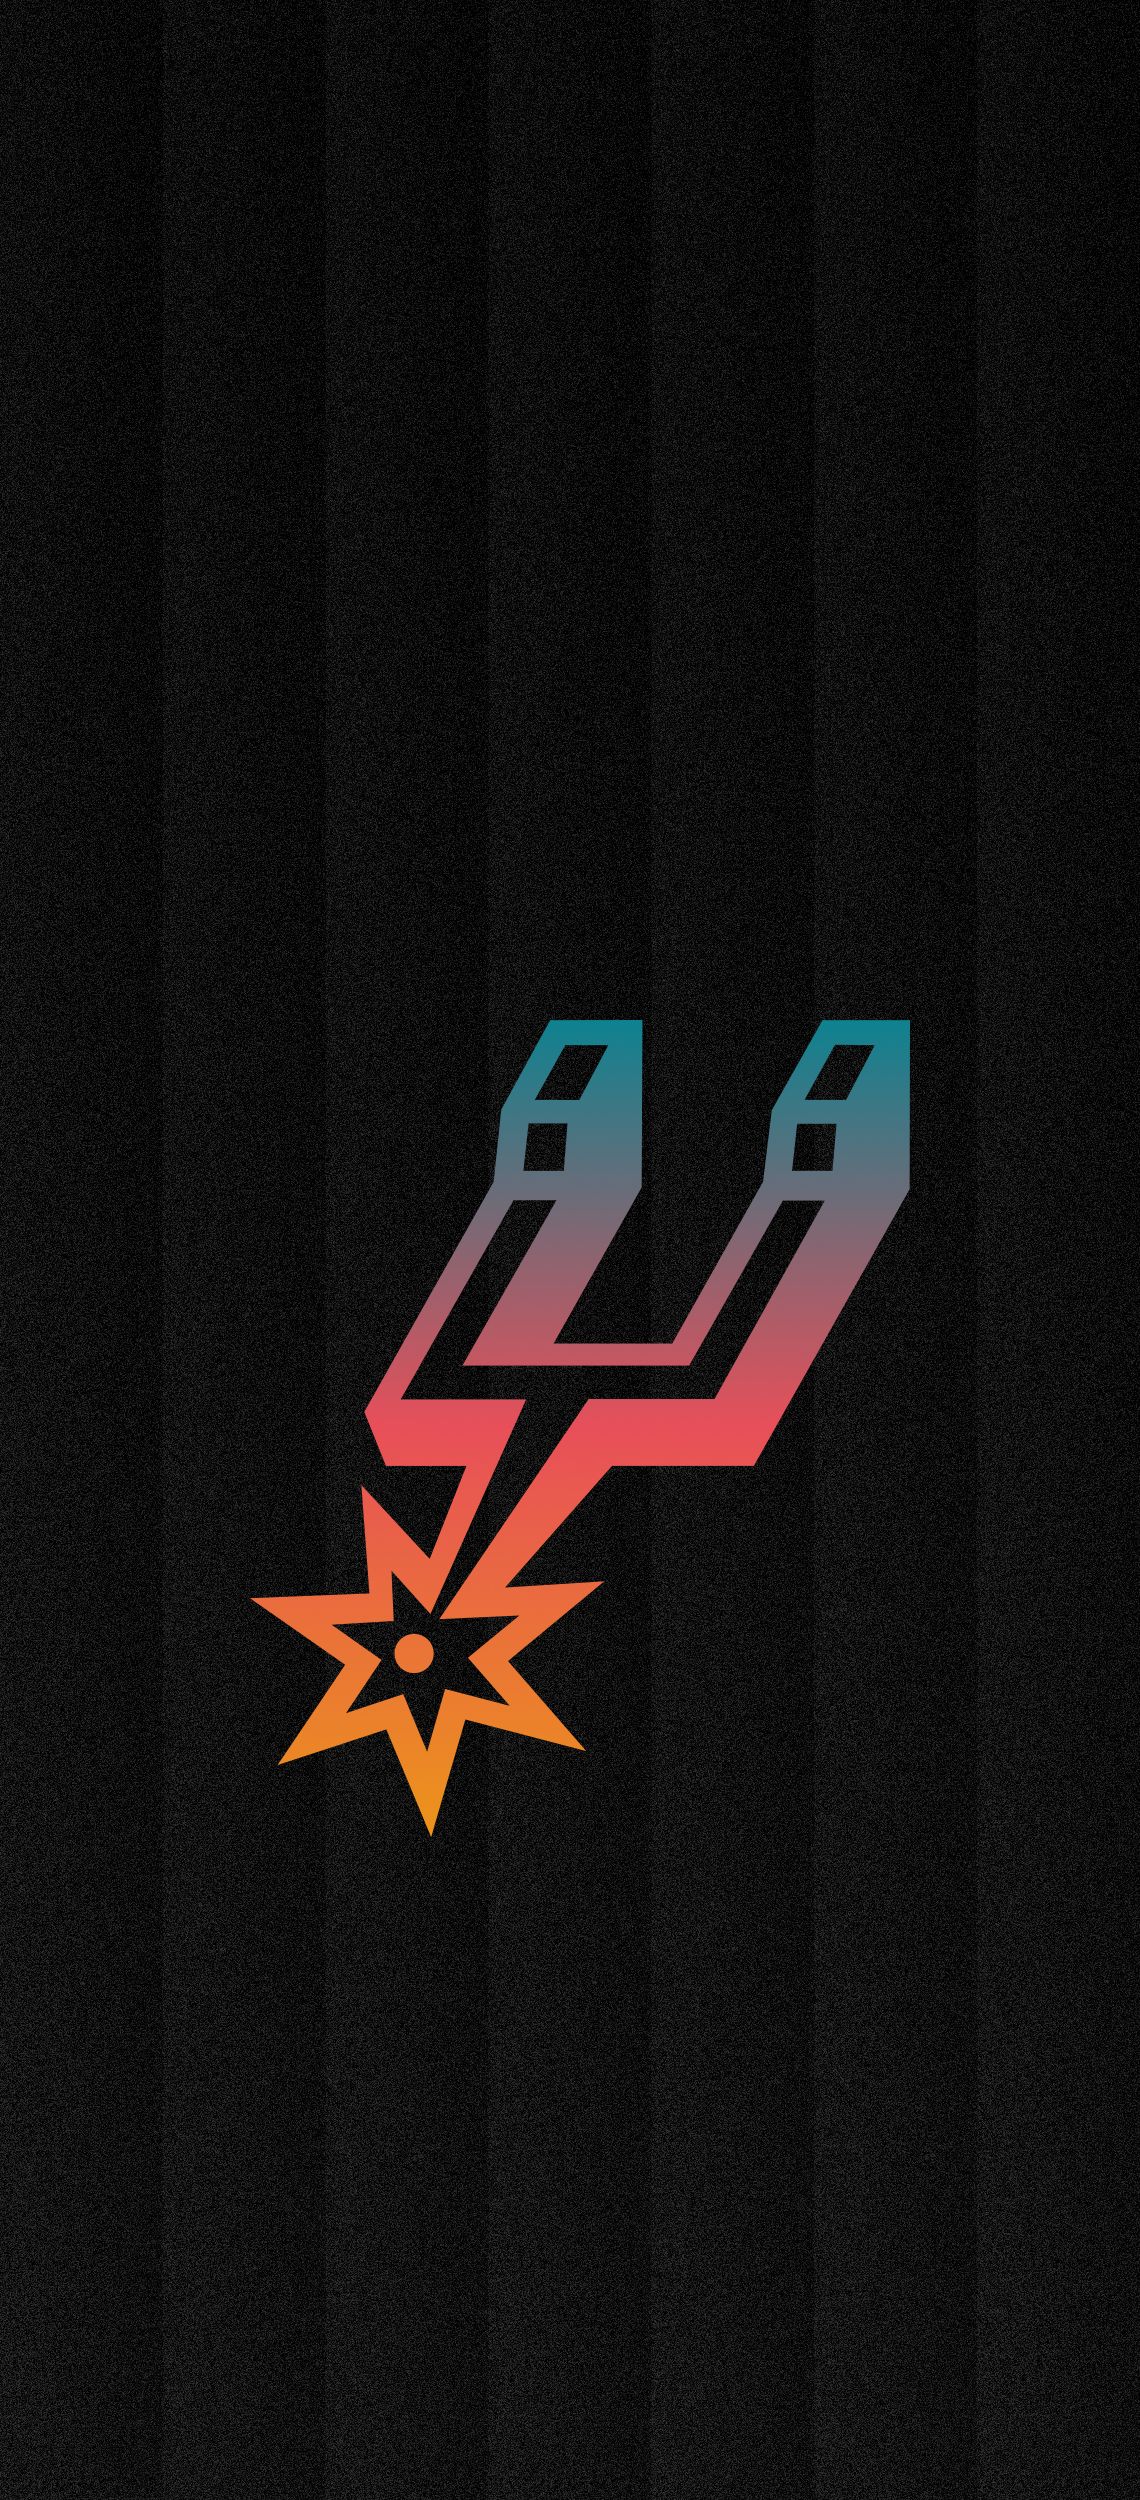 San Antonio Spurs Gradient Wallpaper. San antonio spurs logo, San antonio spurs basketball, Spurs logo